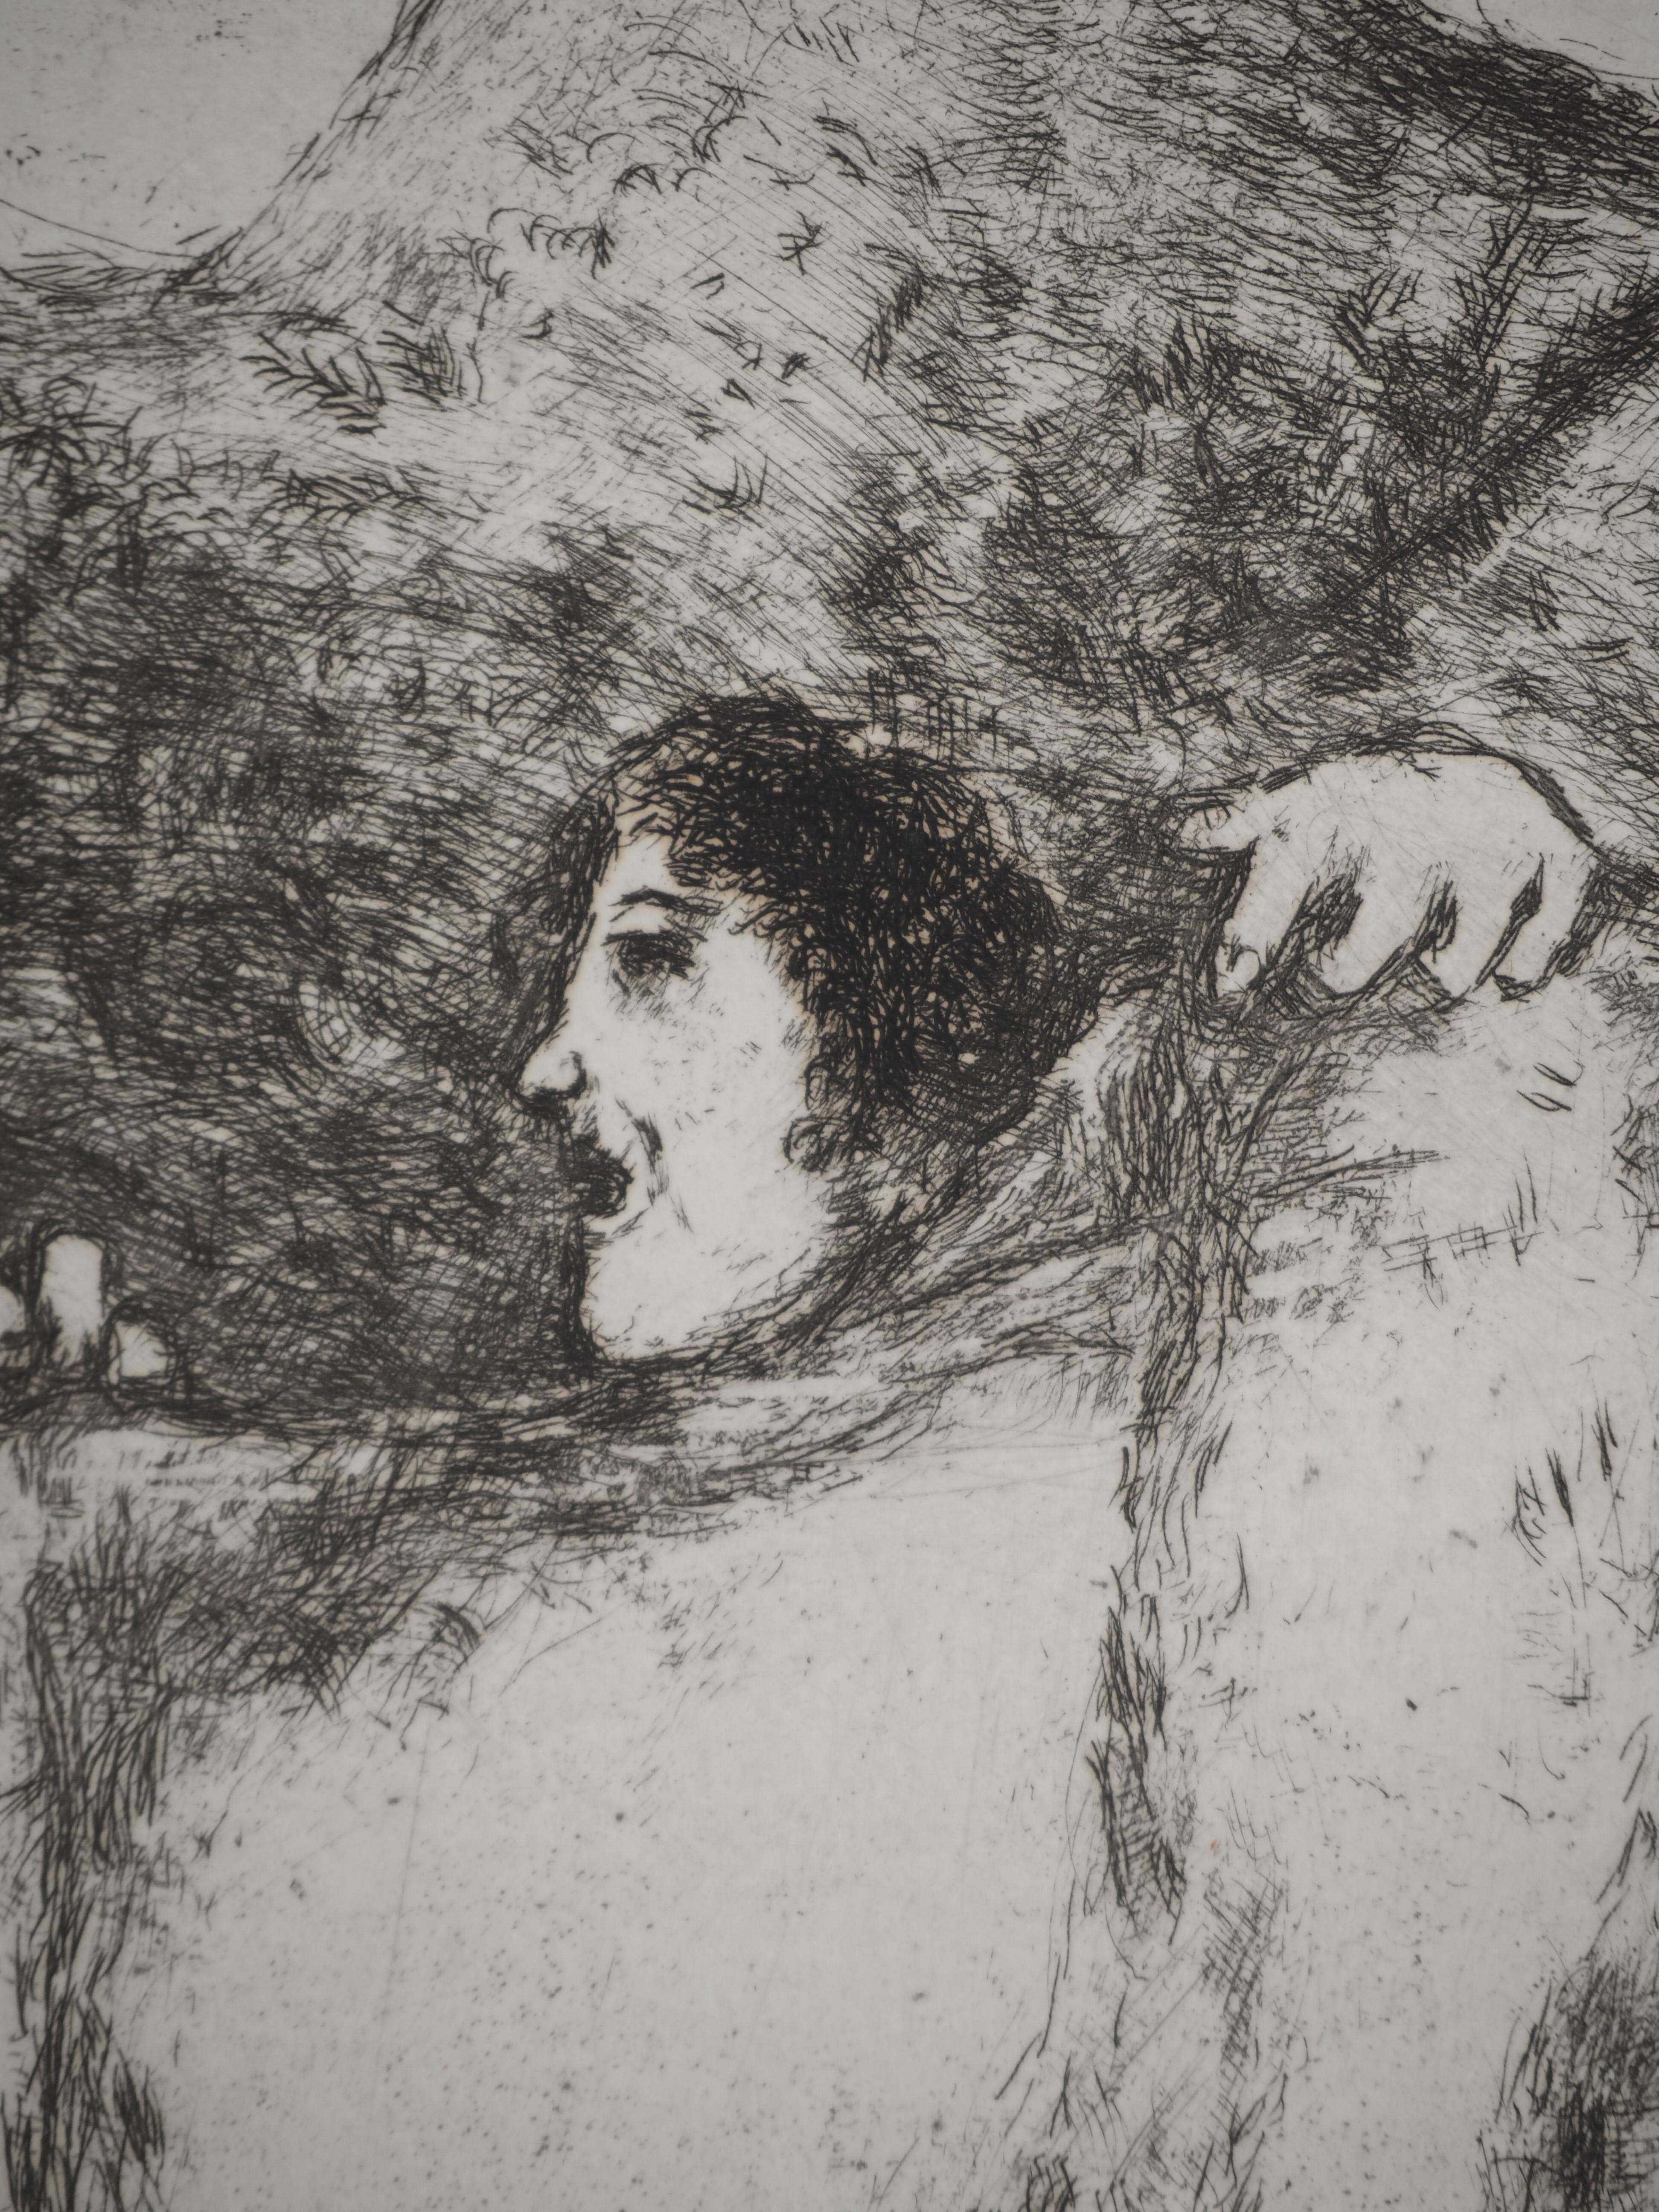 Marc Chagall (1887-1958)
Bible : Le manteau de Noé  (Le manteau de Noé), 1939

Gravure originale
Non signé
Sur vélin de Montval, 44 x 33.5 cm (c. 17.3 x 13.1 inch)

INFORMATION : Publié par Vollard / Tériade en 1956

RÉFÉRENCE : Catalogue raisonné